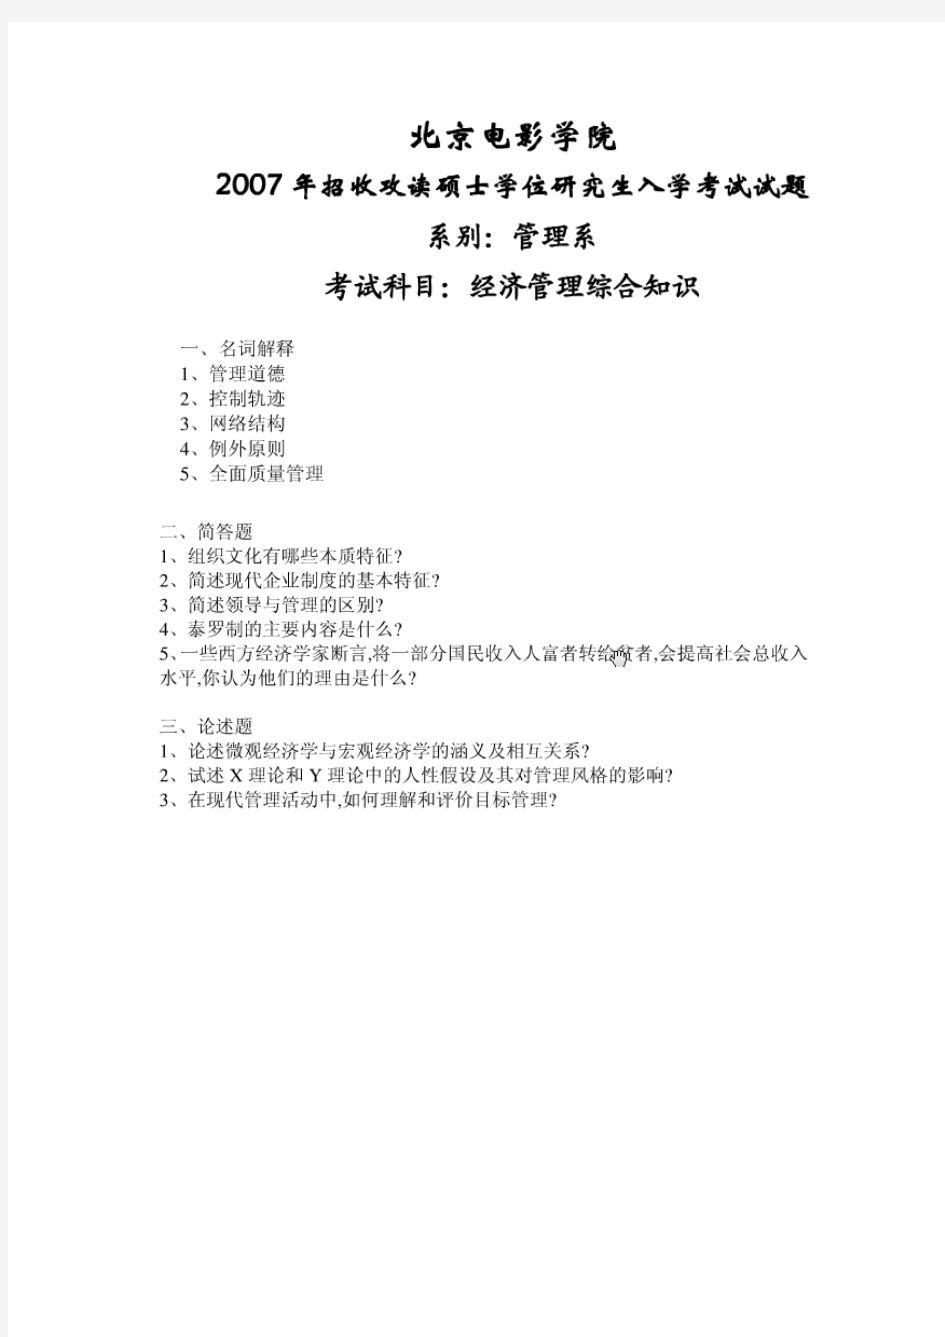 北京电影学院经济管理综合知识2007年考研真题考研试题